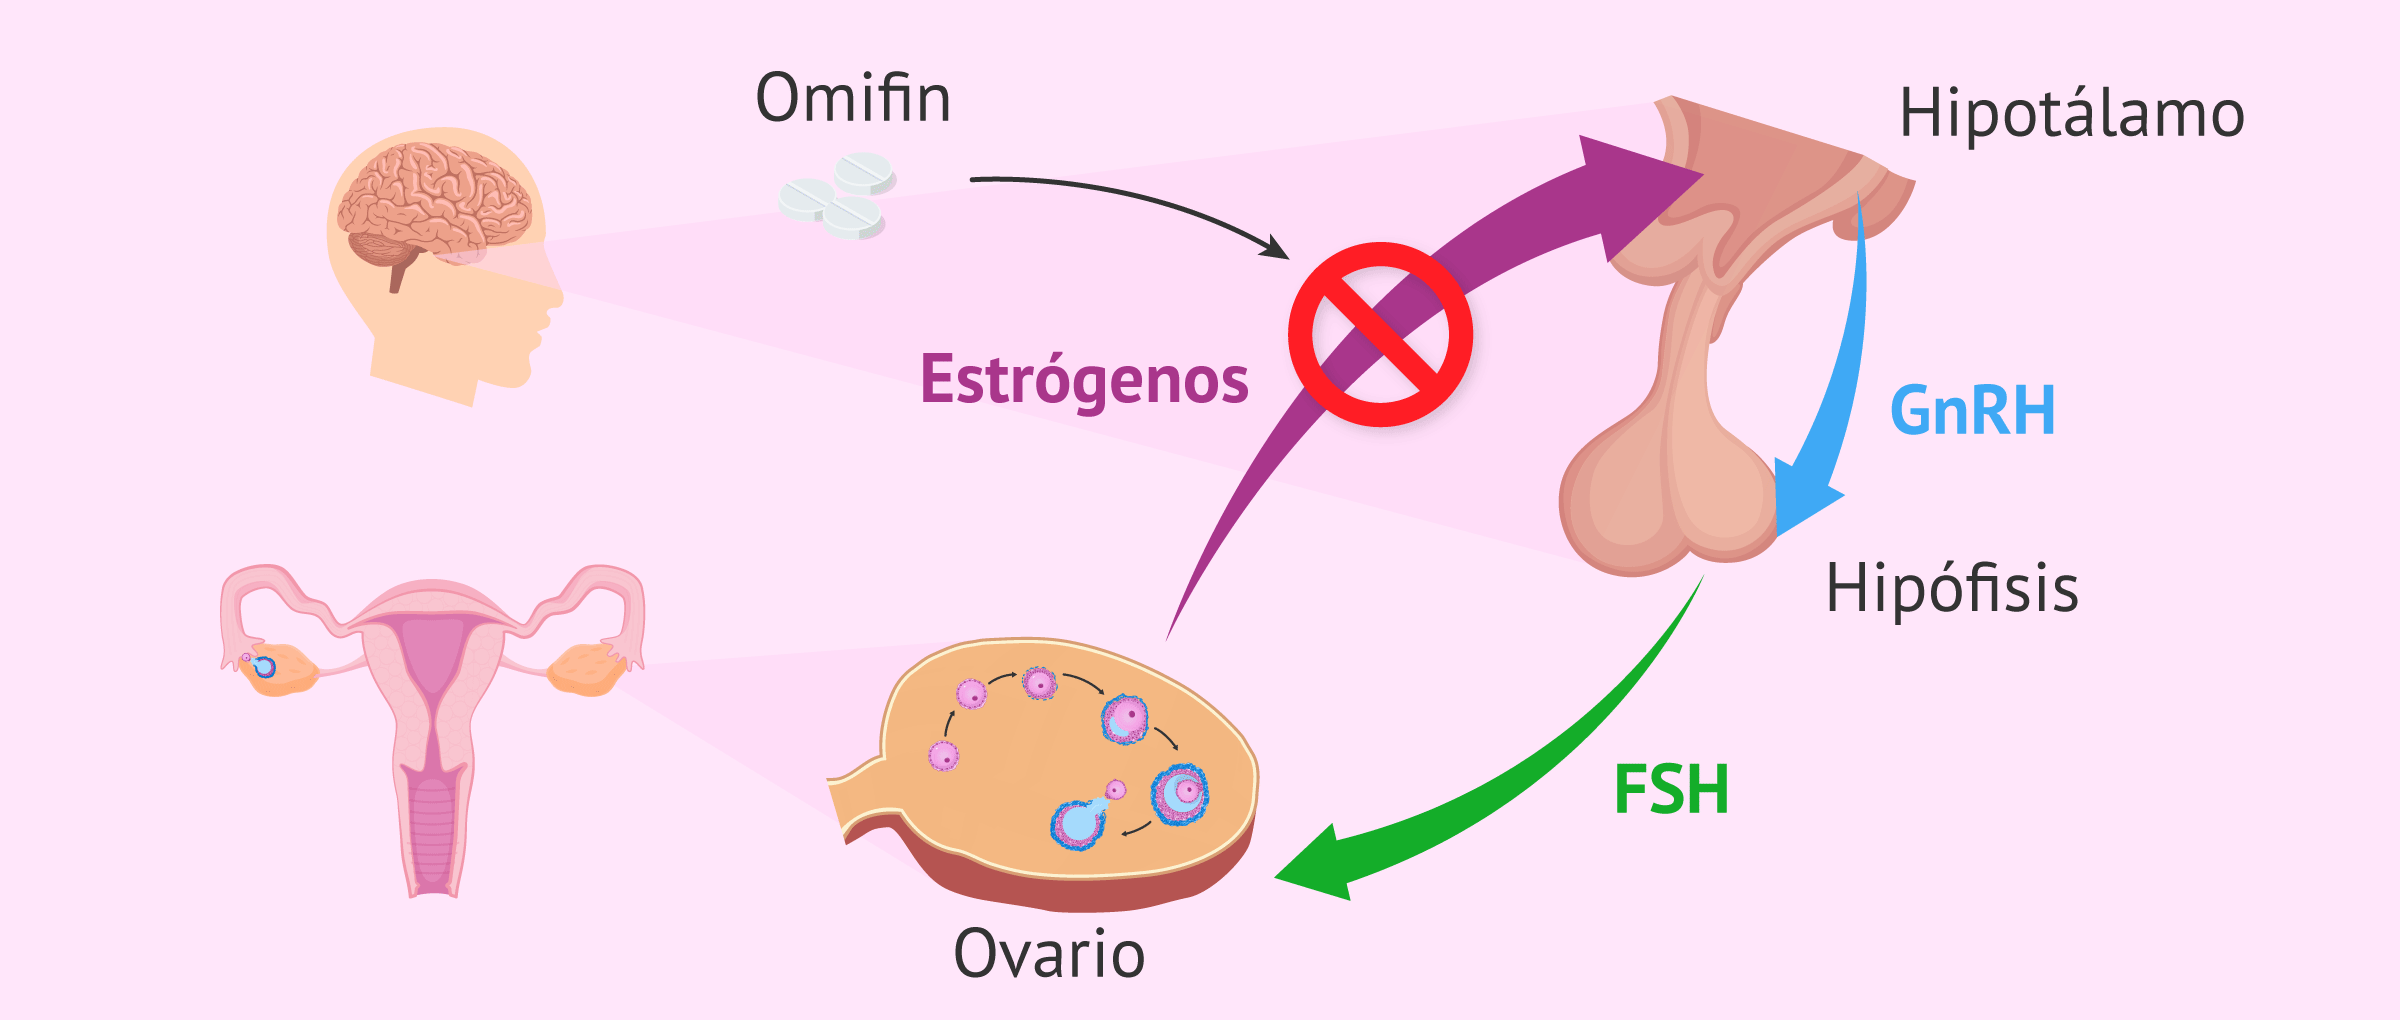 Como subir los estrógenos